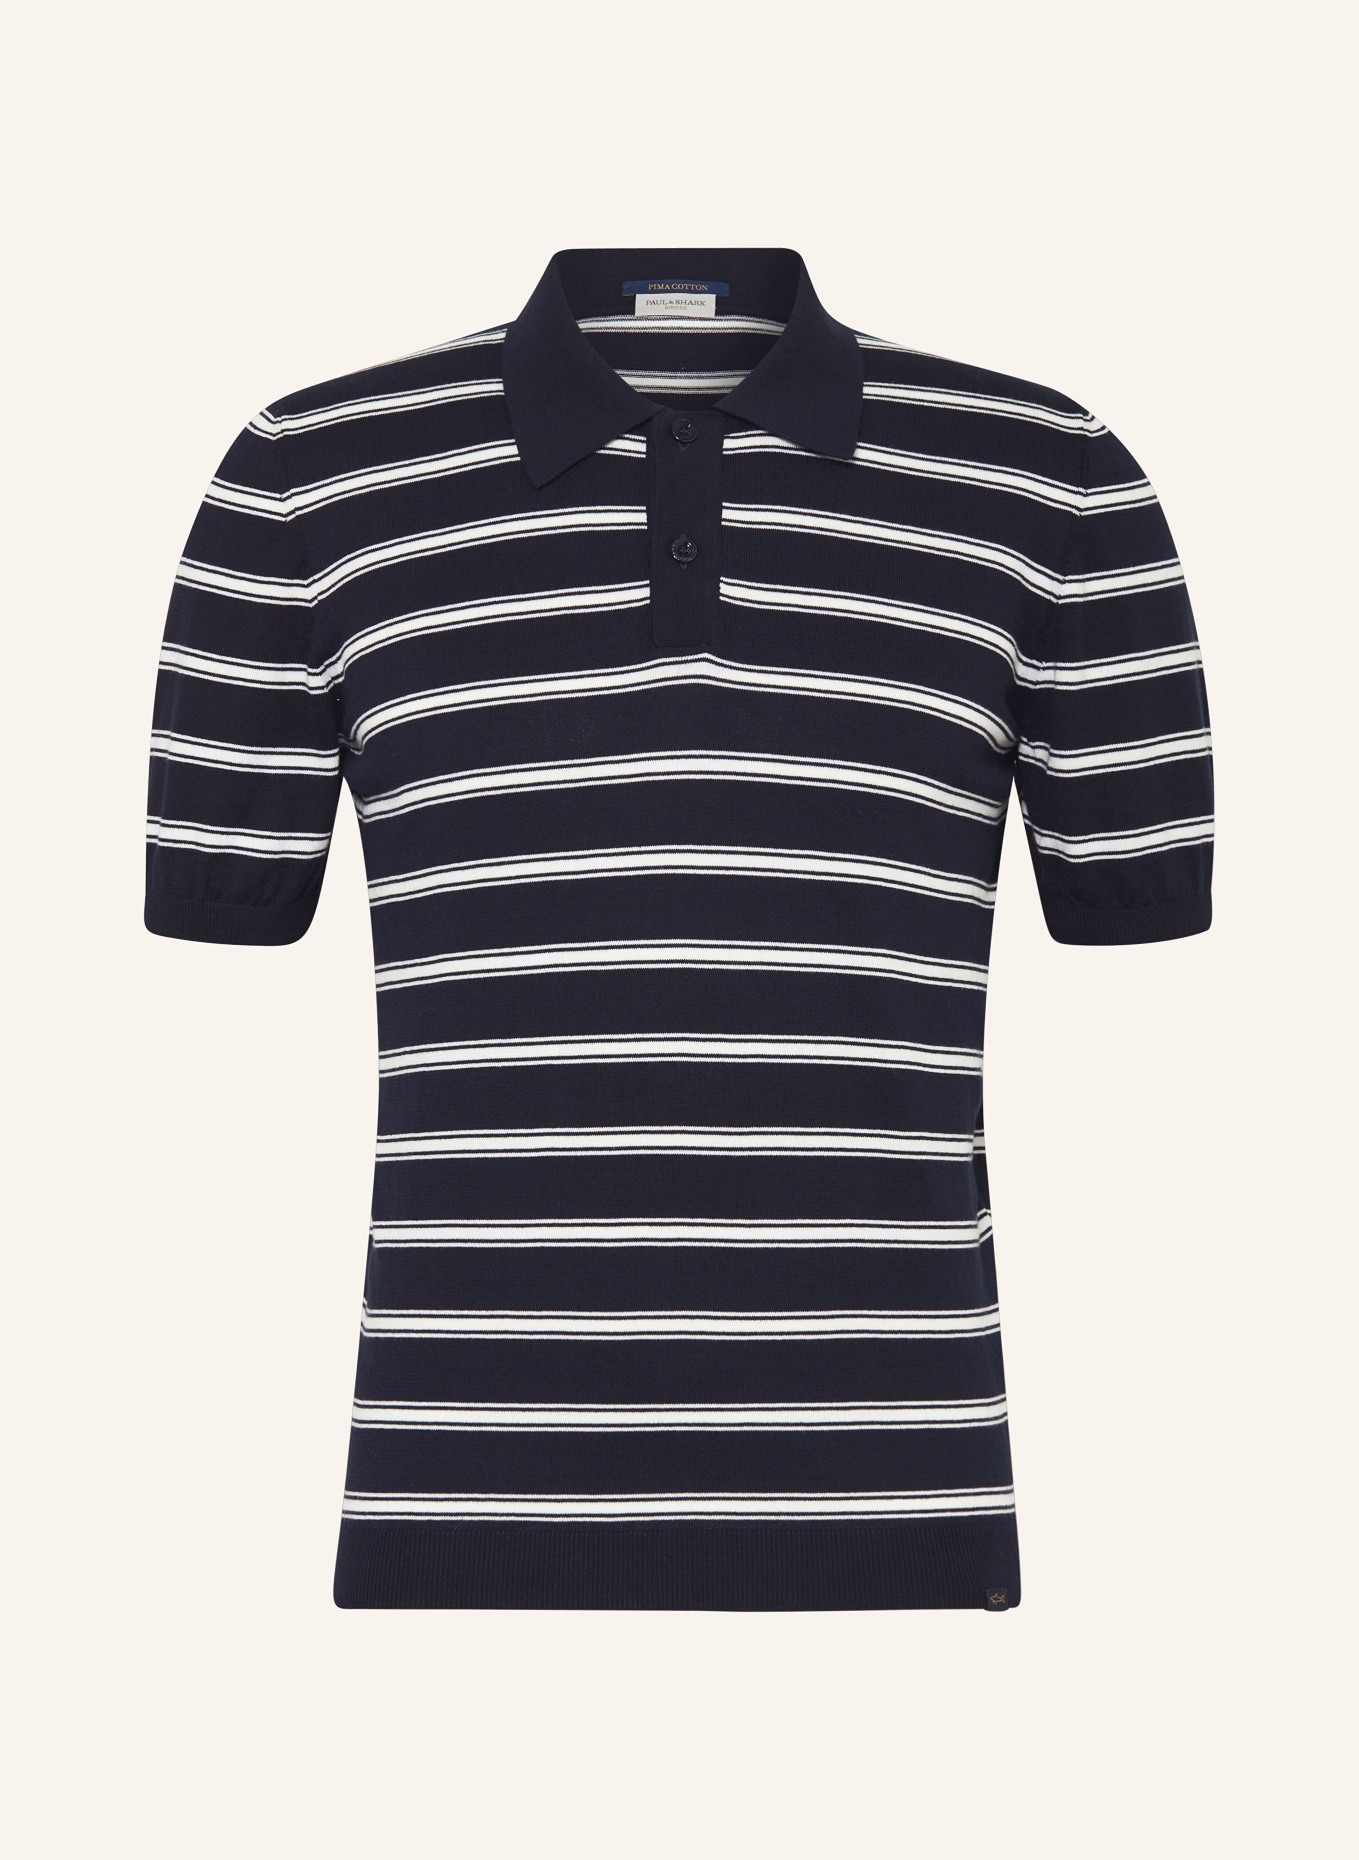 PAUL & SHARK Strick-Poloshirt, Farbe: DUNKELBLAU/ WEISS (Bild 1)